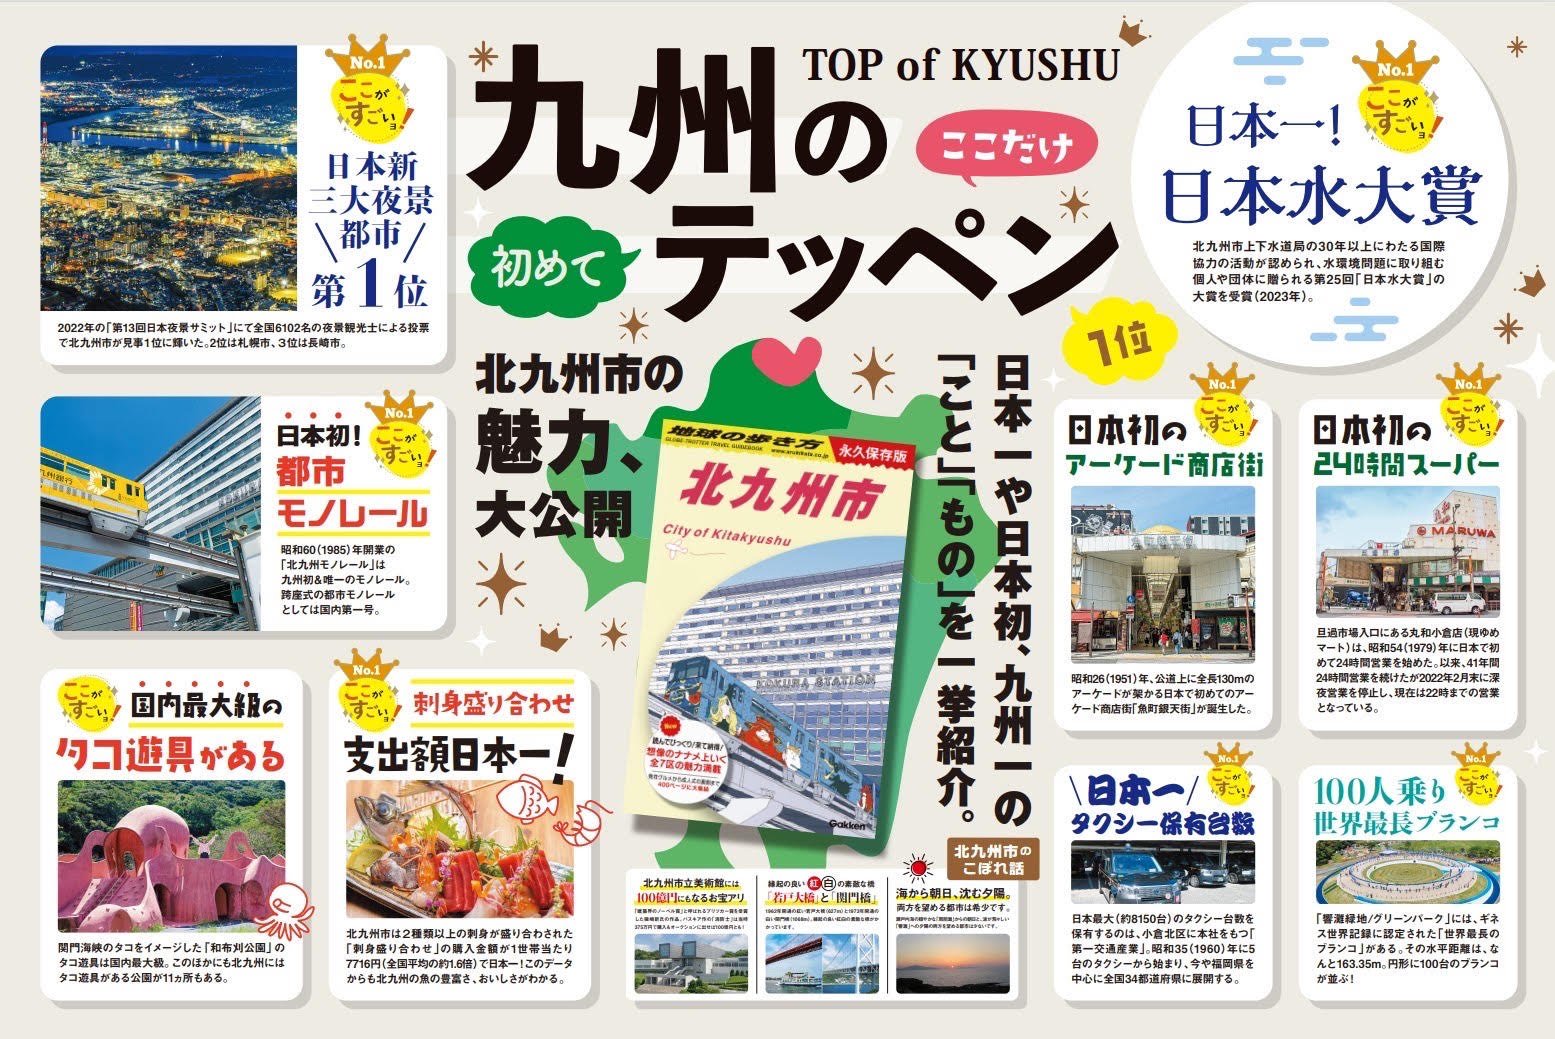 tikyu-travel-guidebook-kitakyushu-city.jpg